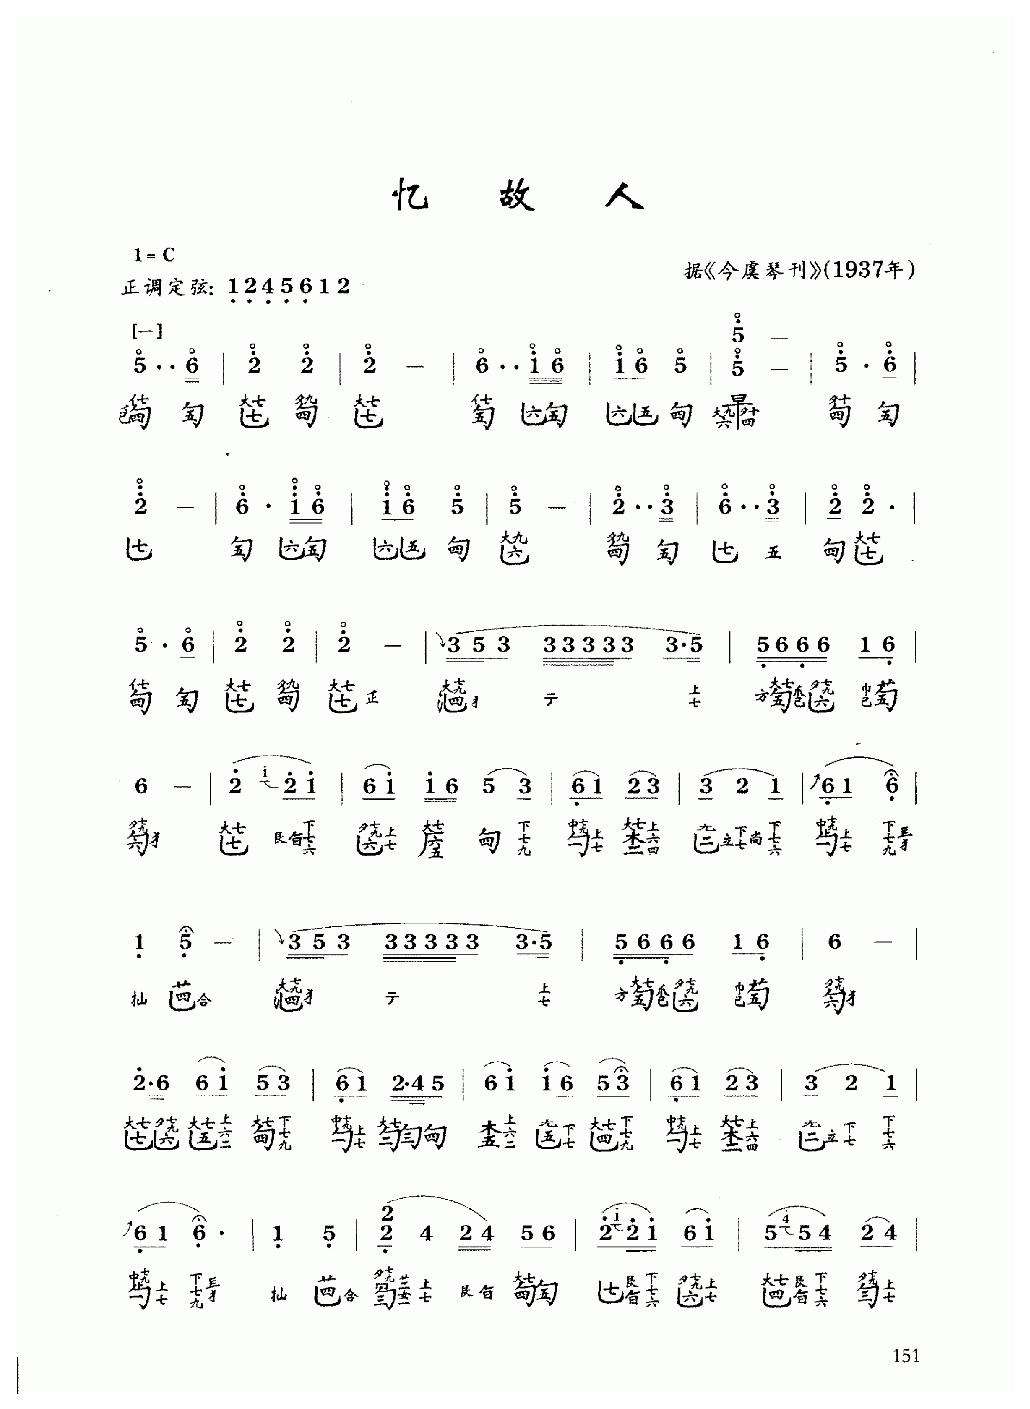 古琴乐曲谱 第六级《忆故人》据今虞琴刊1937年